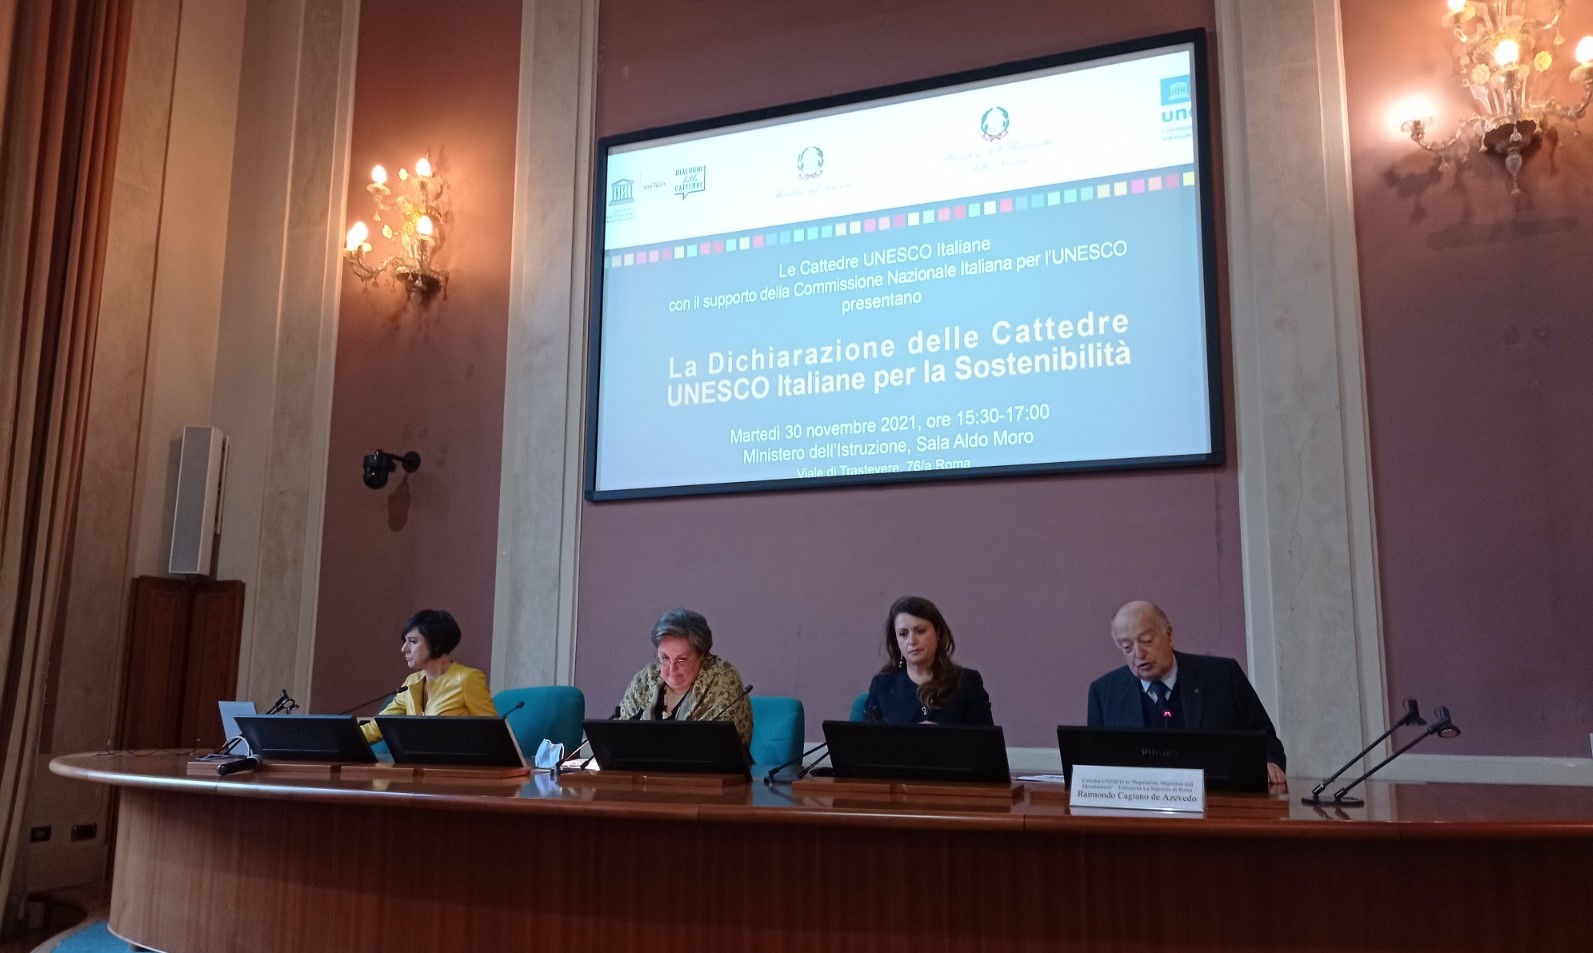 La Dichiarazione delle Cattedre UNESCO Italiane per la Sostenibilità